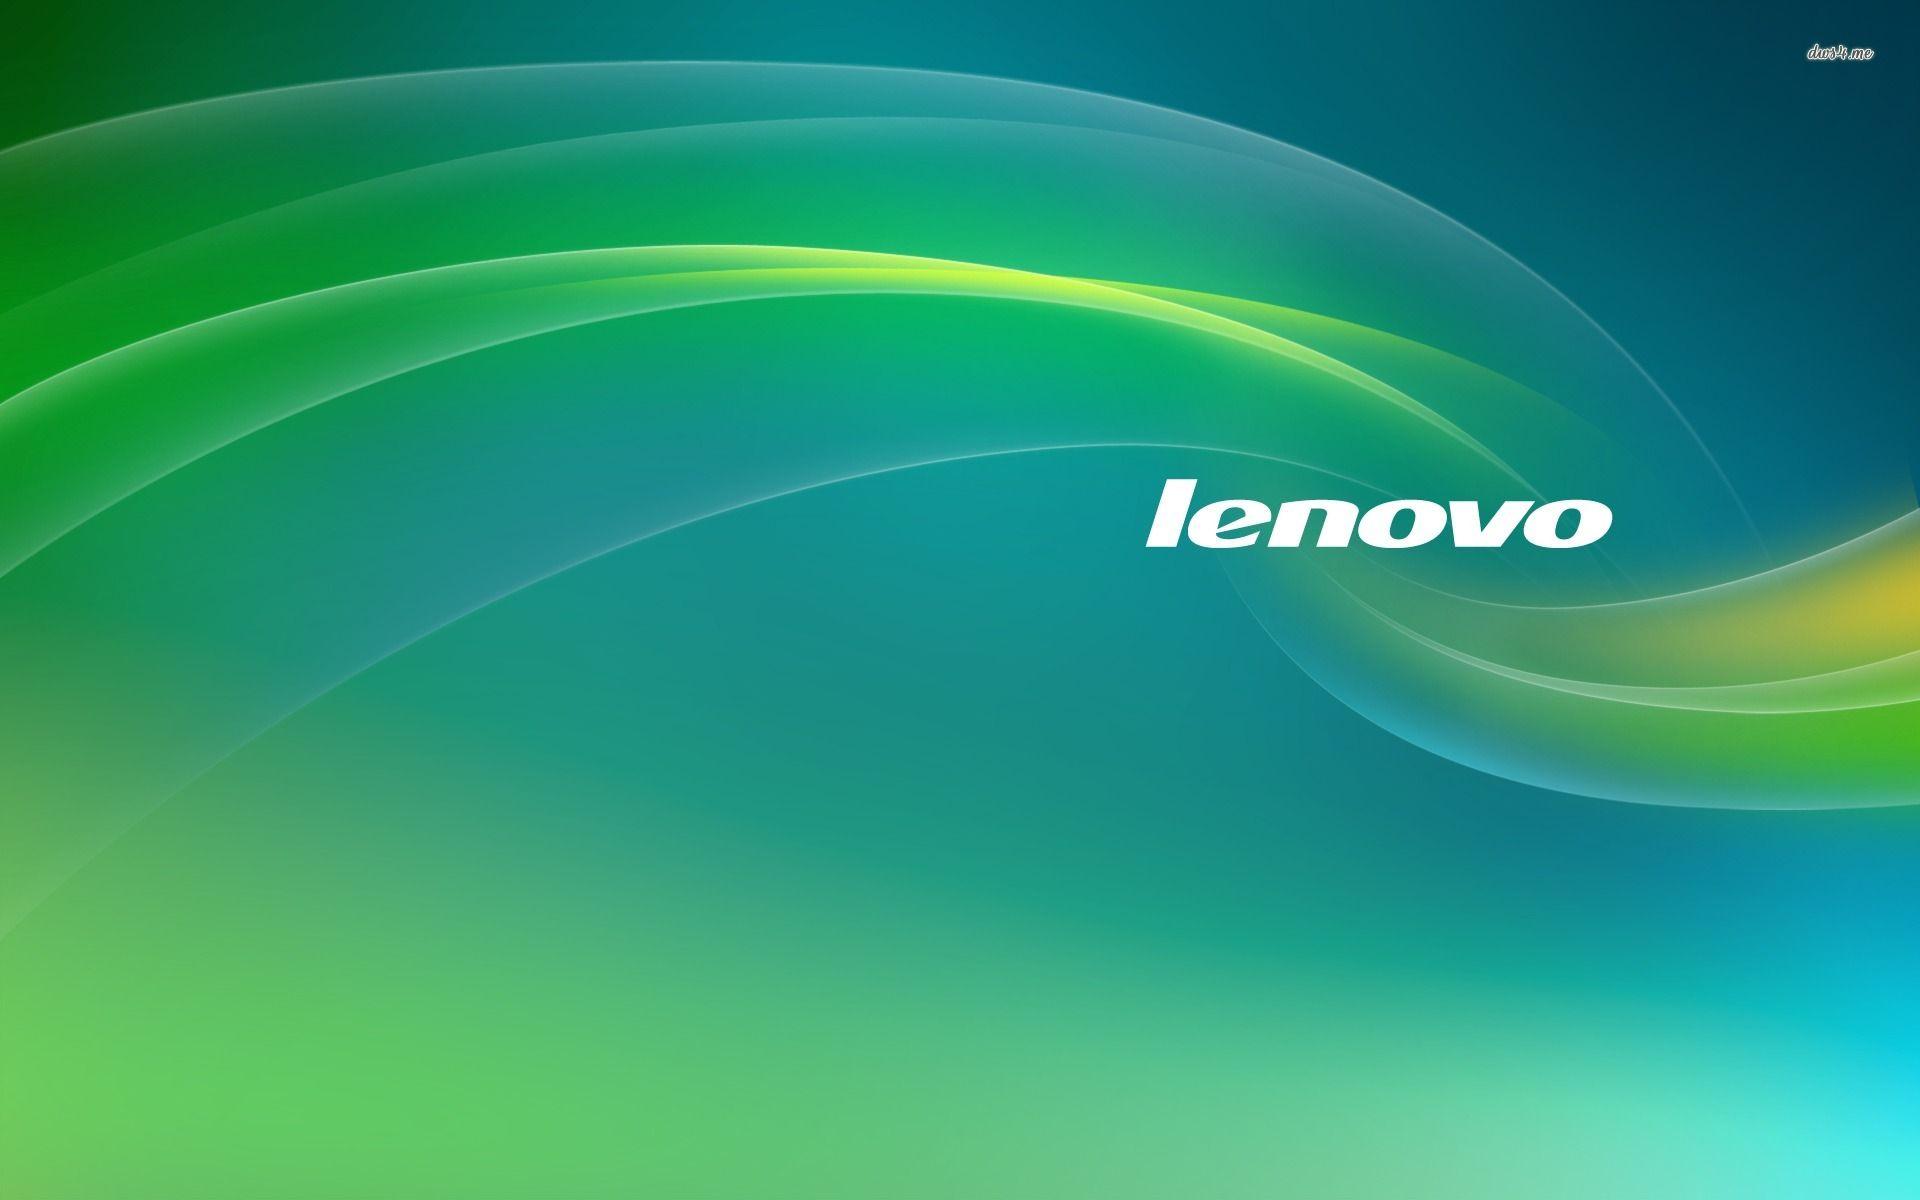 Hình nền Lenovo đưa người dùng đến những địa điểm tuyệt đẹp trên thế giới. Các hình ảnh đa dạng về phong cảnh và màu sắc giúp bạn tạo ra một không gian làm việc đầy cảm hứng. Hãy khám phá thế giới của Lenovo thông qua hình nền đẹp mắt này. 